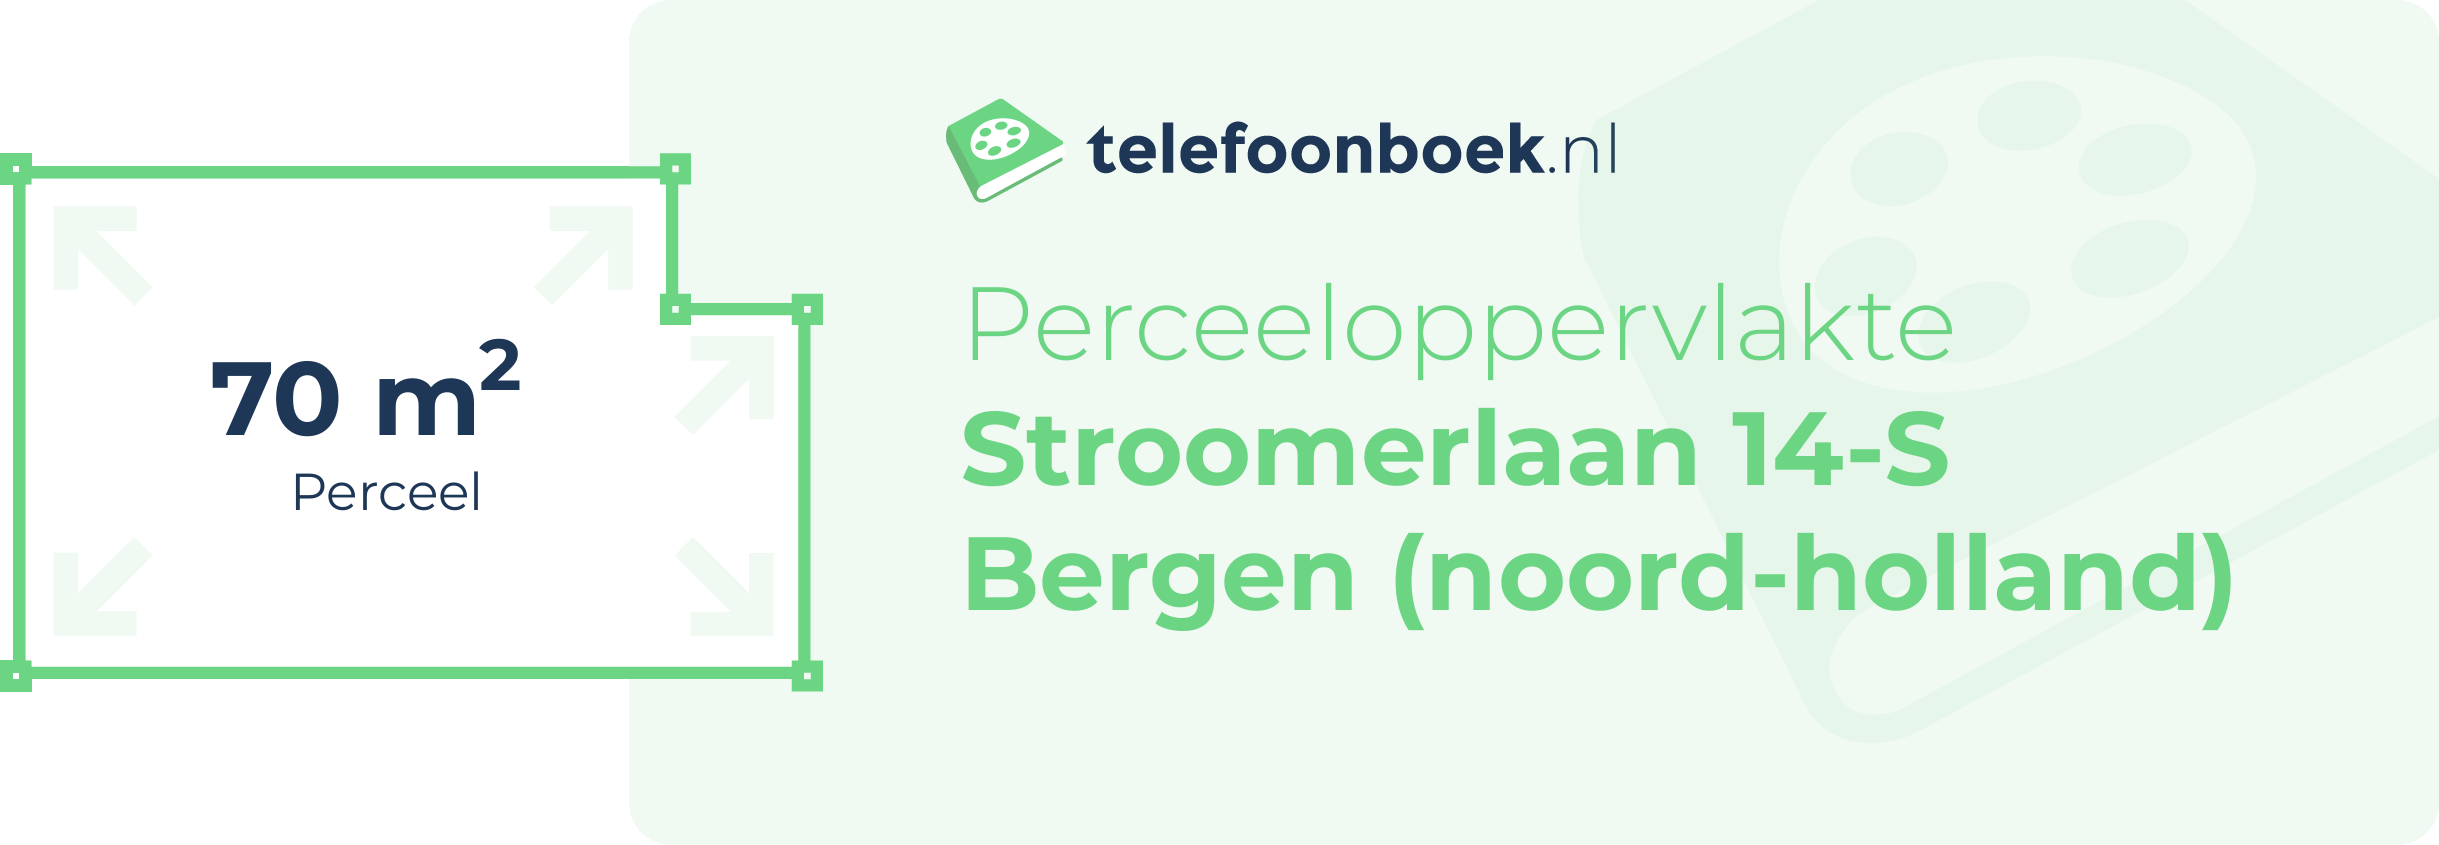 Perceeloppervlakte Stroomerlaan 14-S Bergen (Noord-Holland)